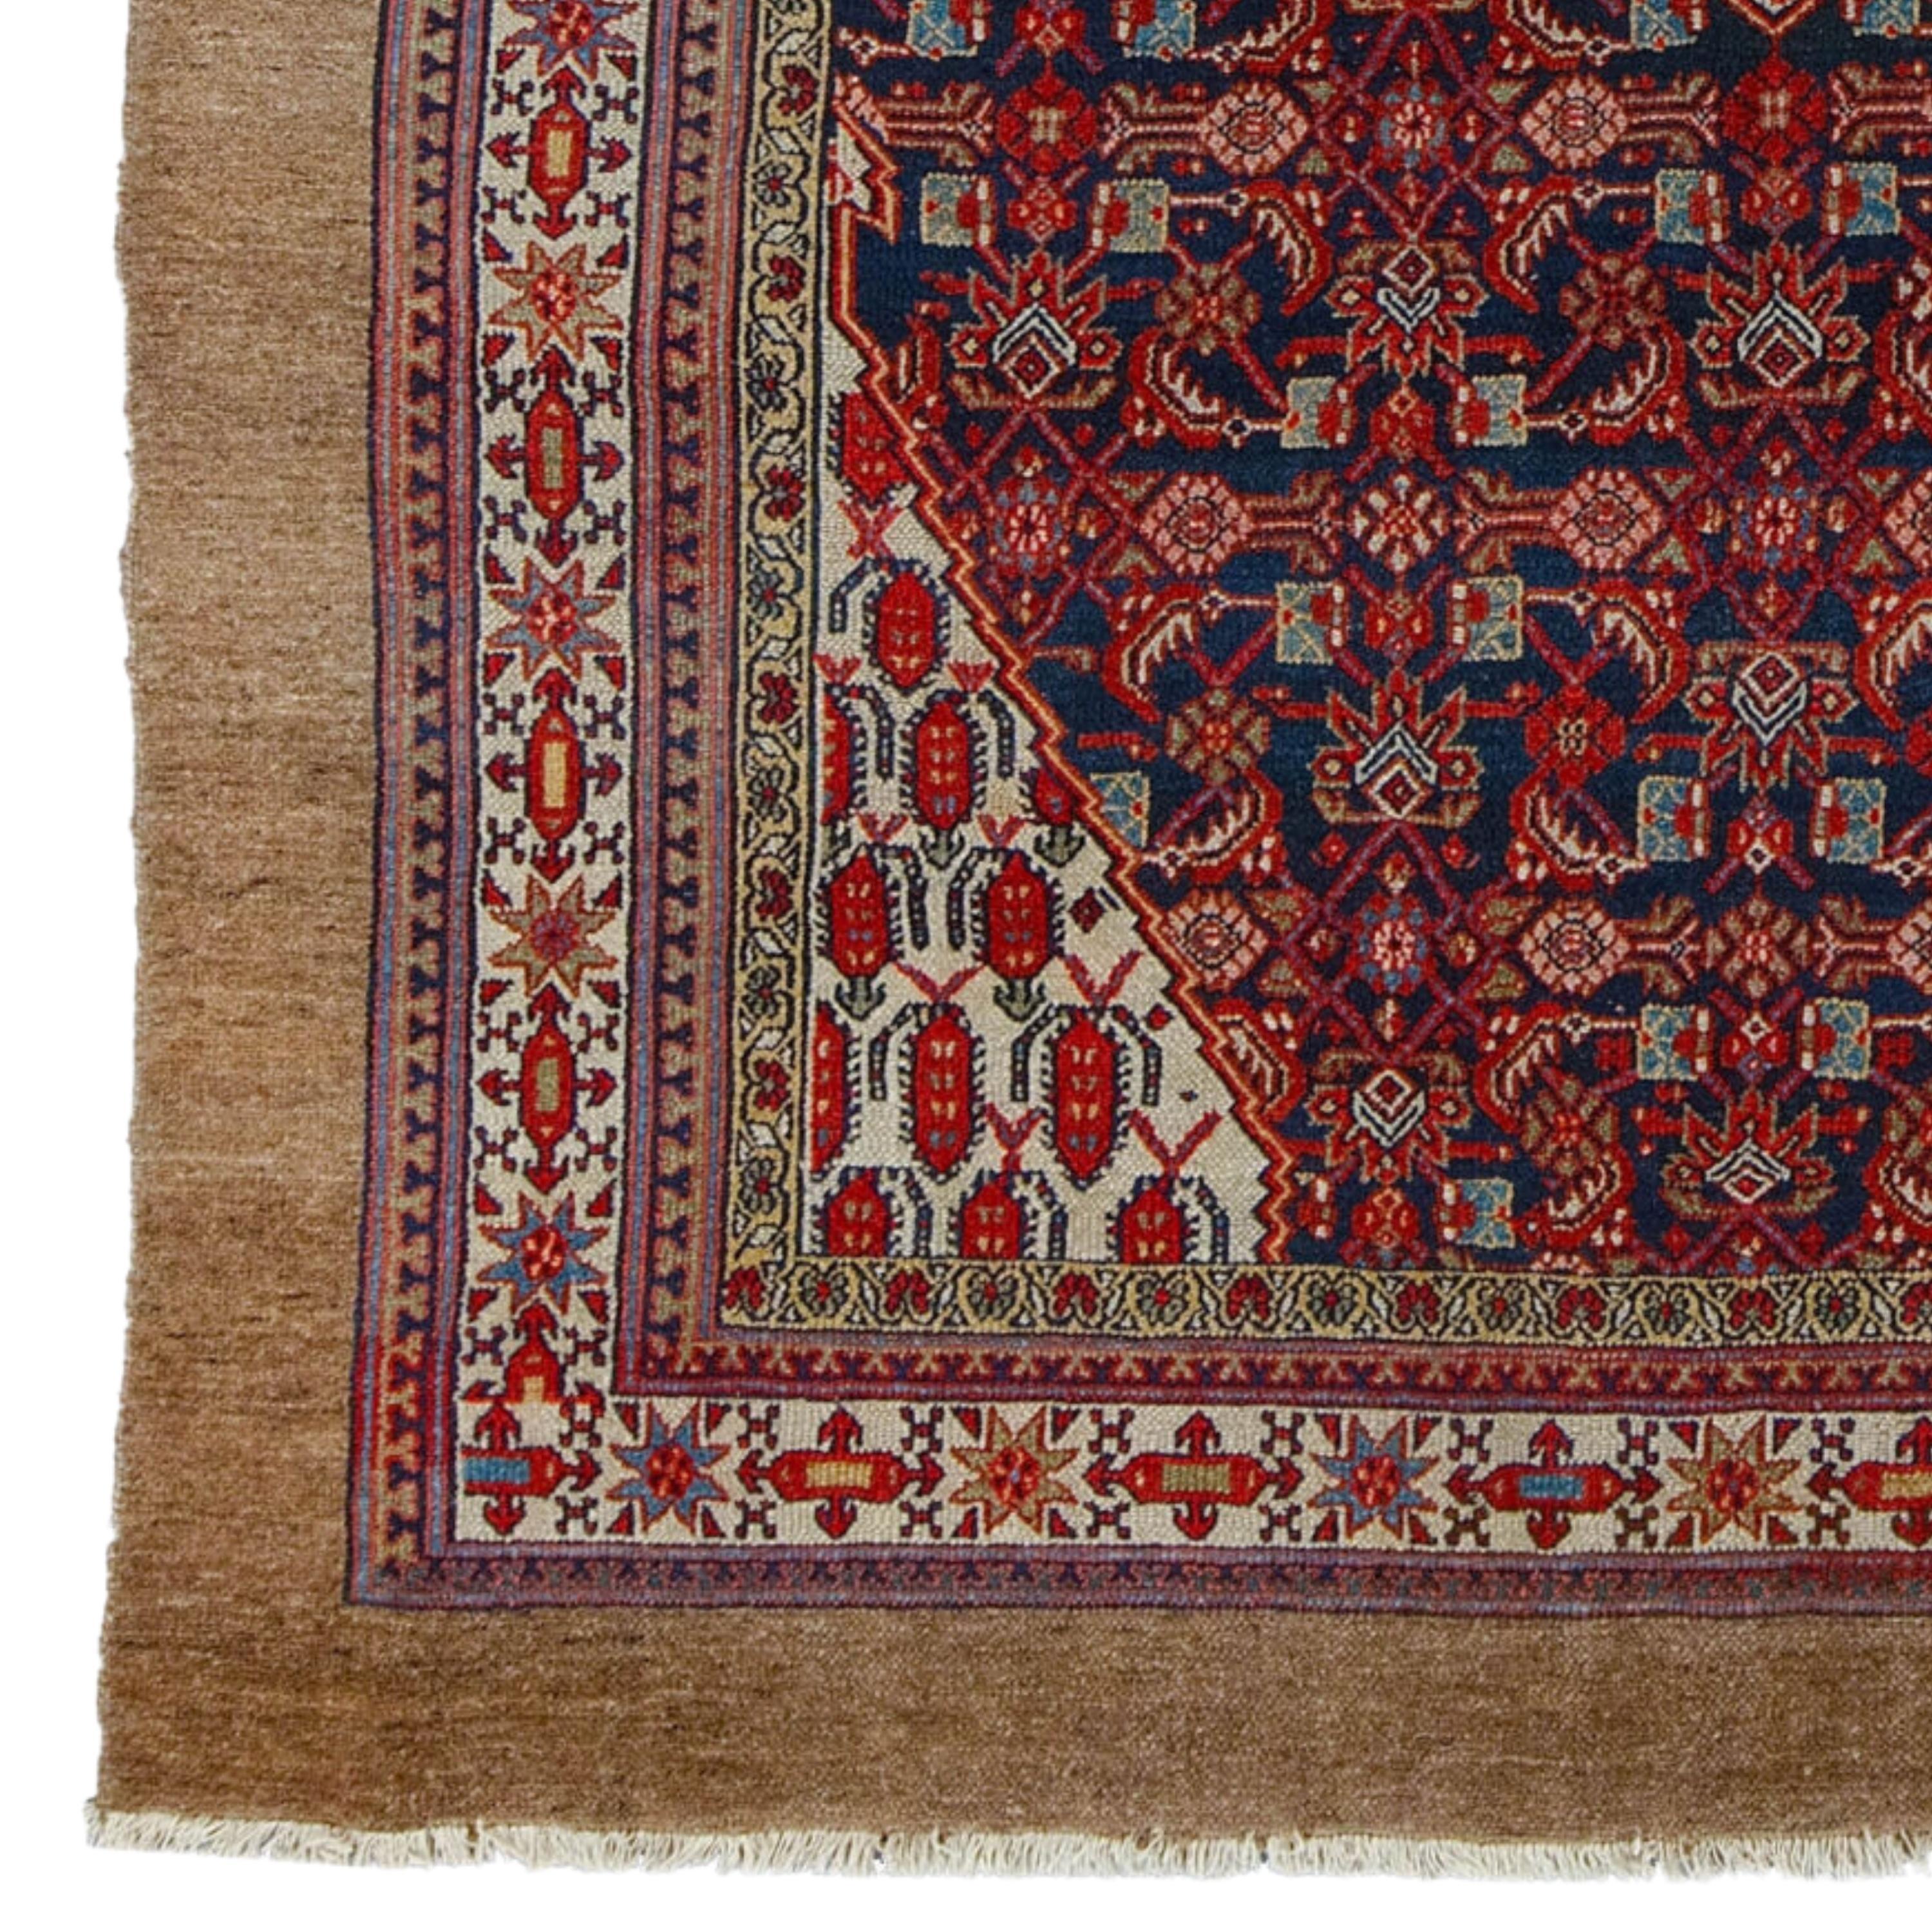 Ancien tapis de Hamadan 217x360 cm (7,11x11,81 ft) Fin du 19ème siècle en bon état

Le tapis de Hamadan fait partie d'une grande variété de revêtements de sol tissés à la main dans la région entourant l'ancienne ville de Hamadan (Ecbatana) au